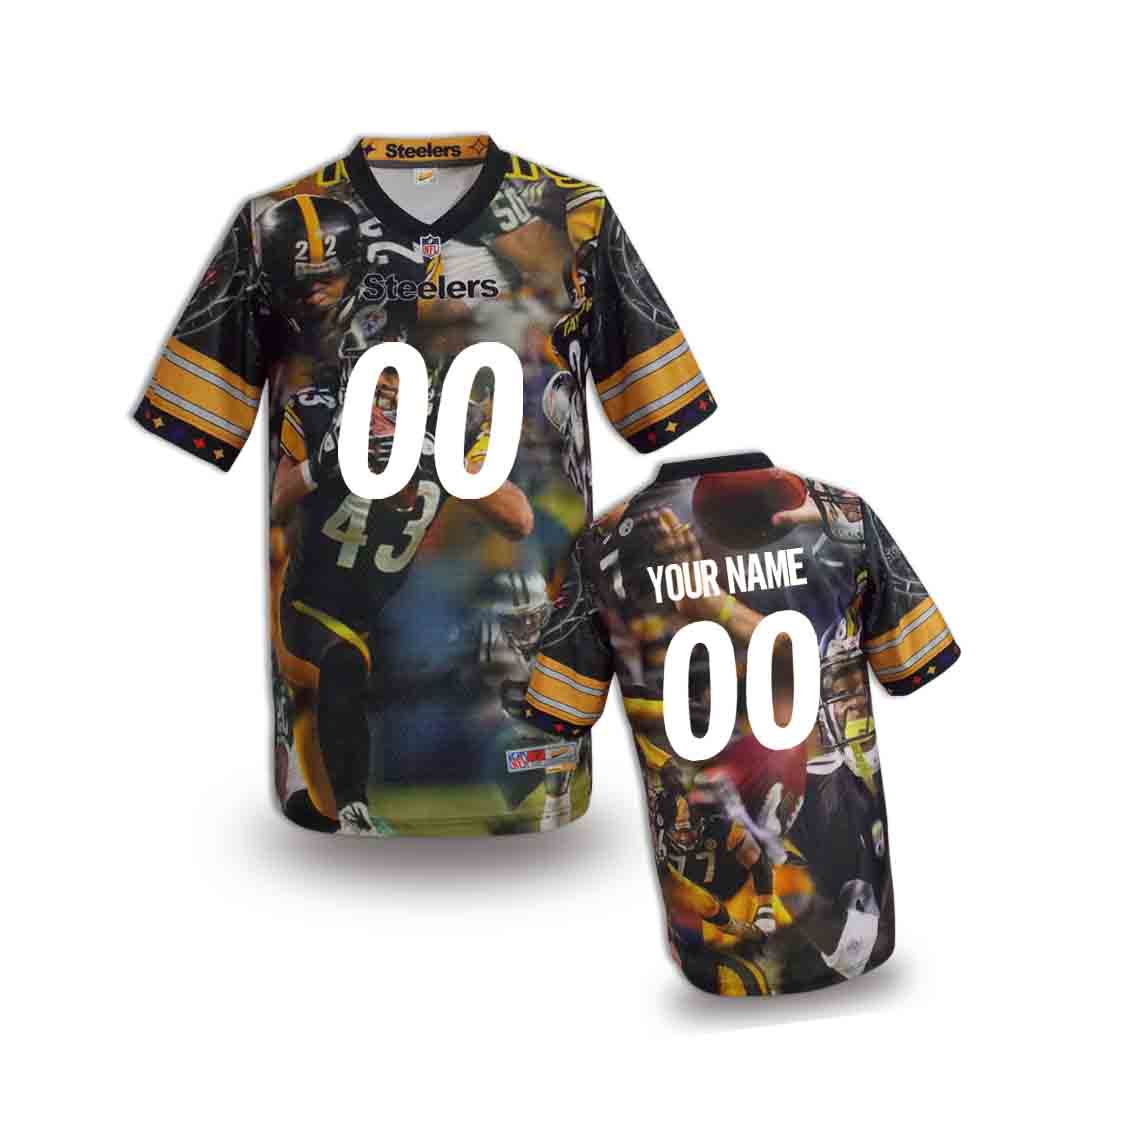 Nike Steelers Customized Fashion Stitched Youth Jerseys05